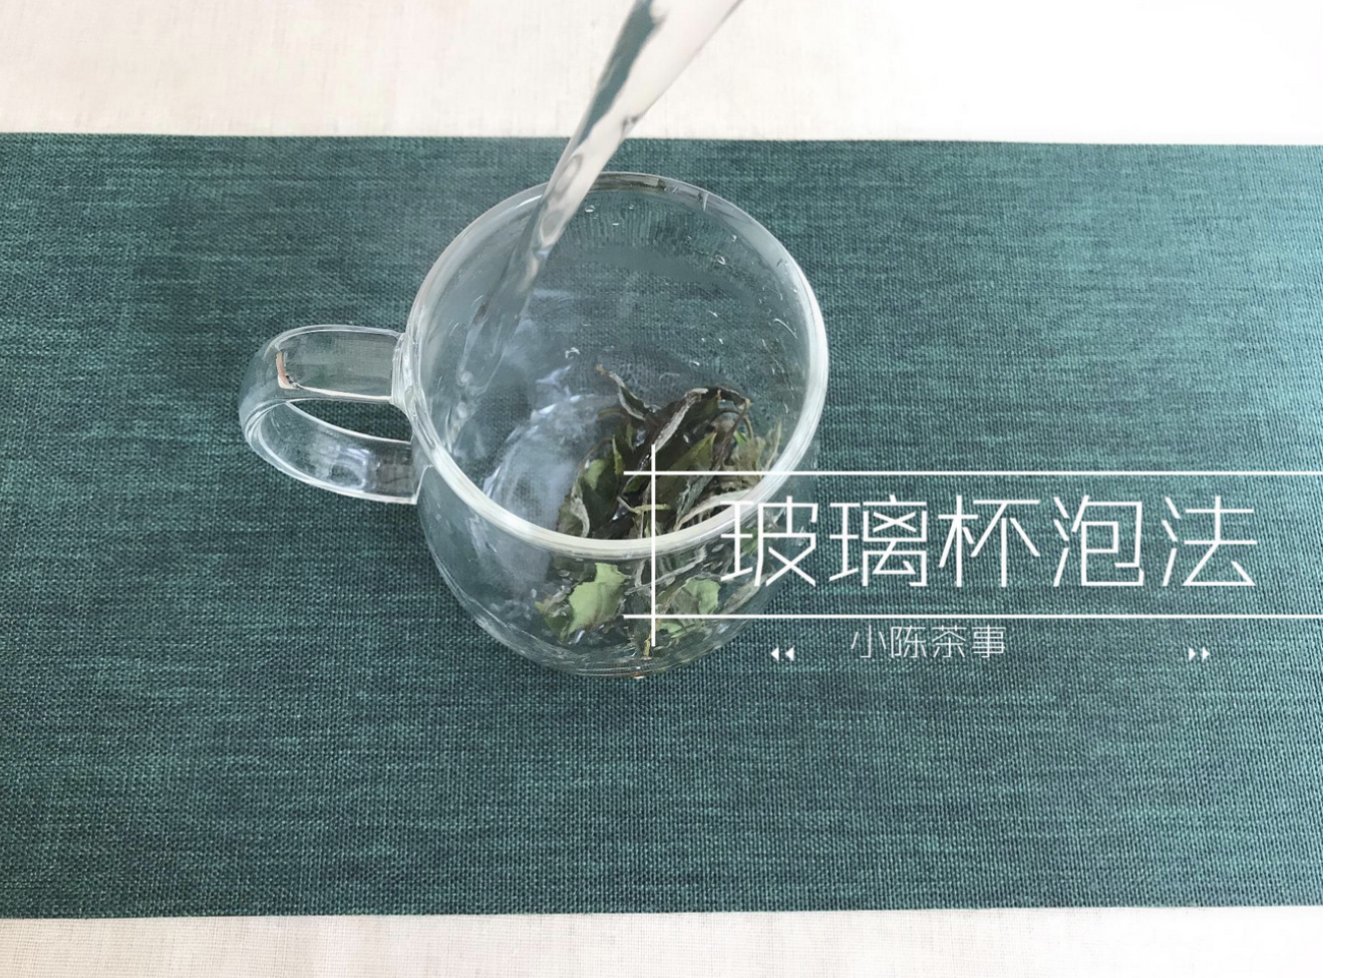 玻璃杯、盖碗泡、煮茶，一个人喝白茶，哪种方式才zui方便省茶？